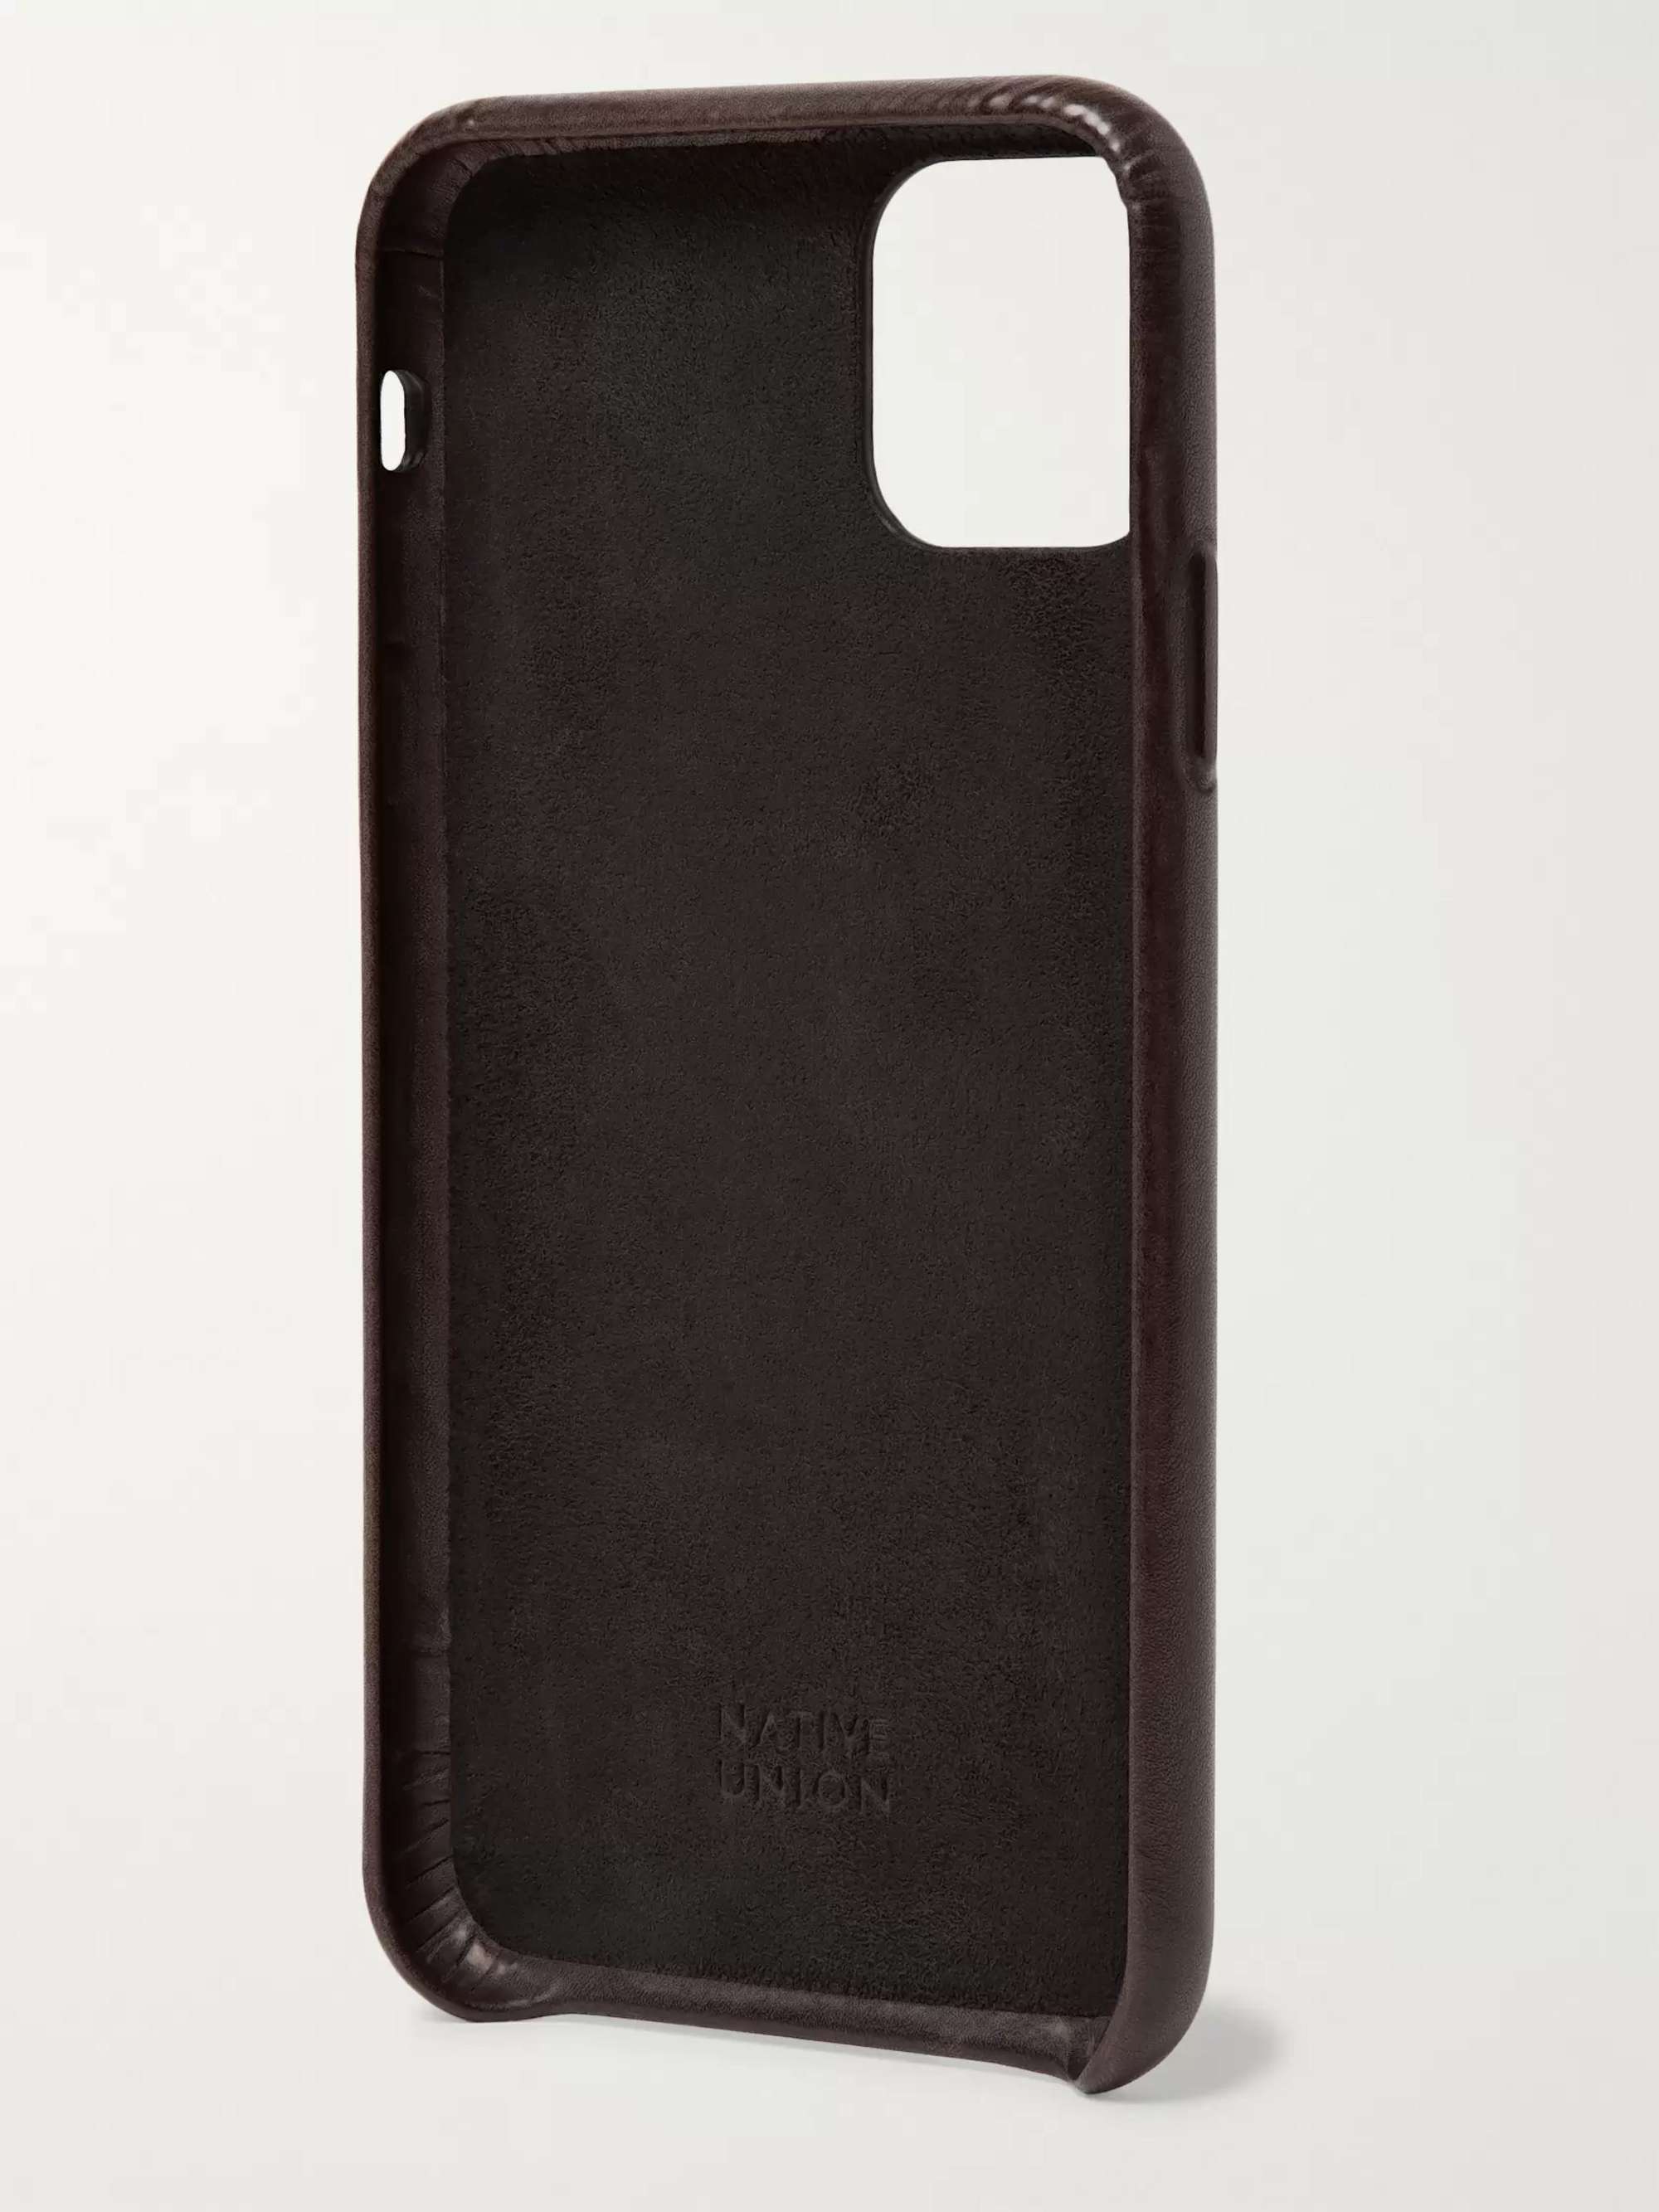 BERLUTI + Native Union Venezia Leather iPhone 11 Pro Max Case | MR PORTER